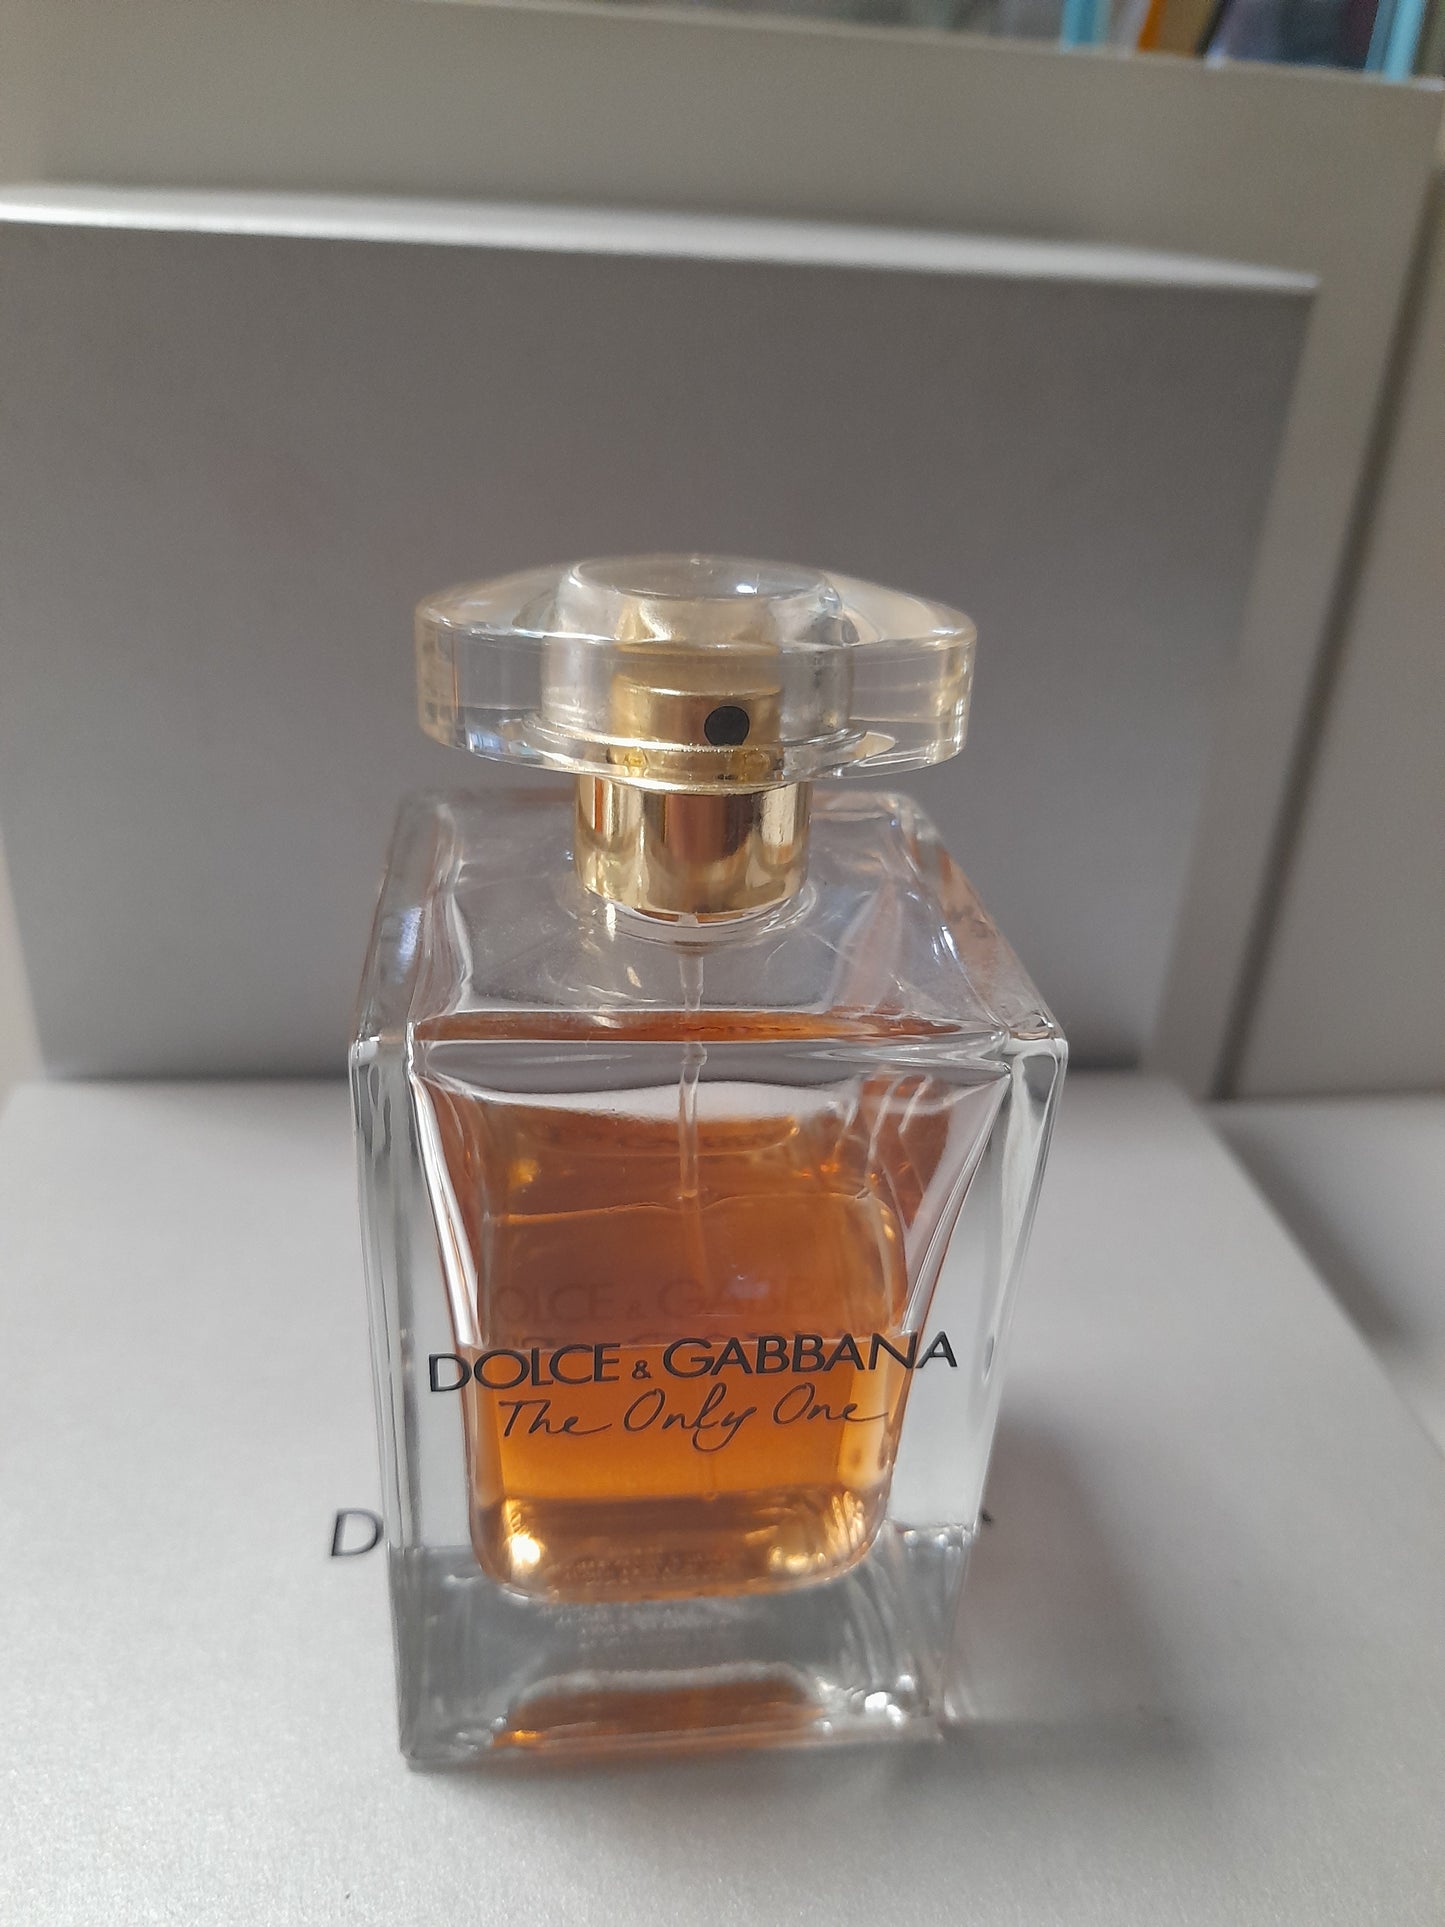 DOLCE & GABBANA - The One Eau de Parfum